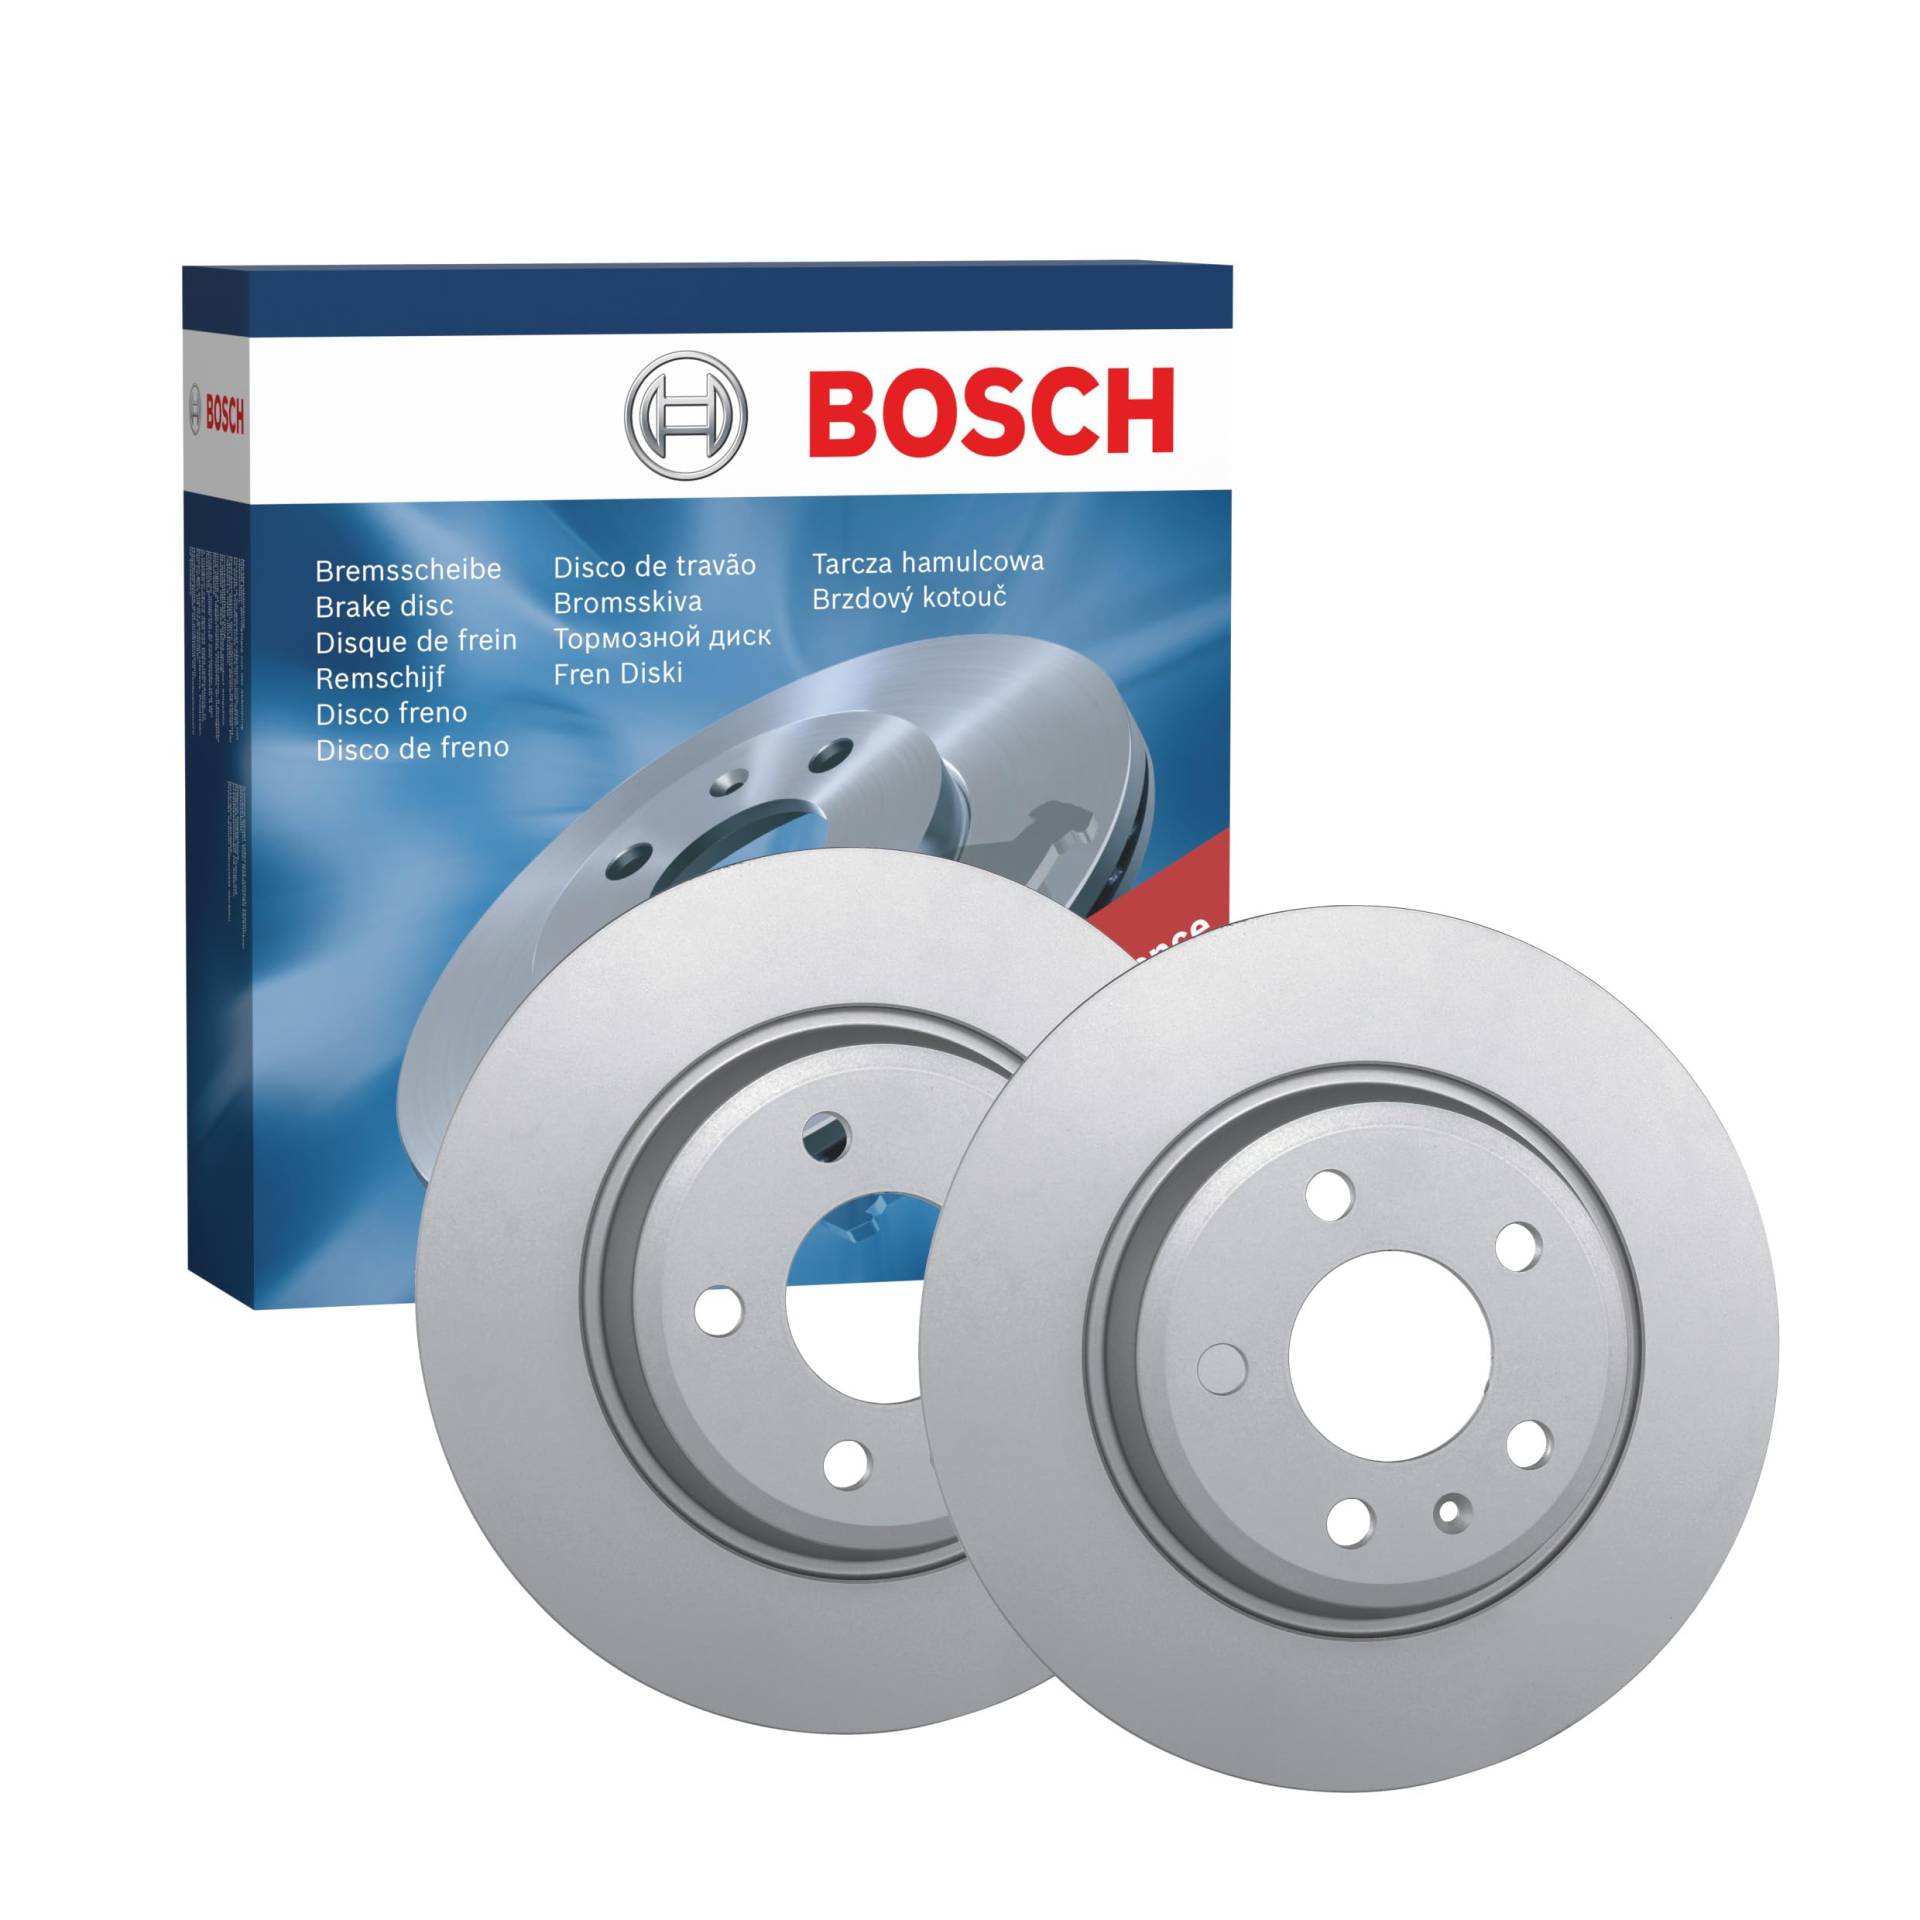 Bosch BD1249 Bremsscheiben - Hinterachse - ECE-R90 Zertifizierung - zwei Bremsscheiben pro Set von Bosch Automotive